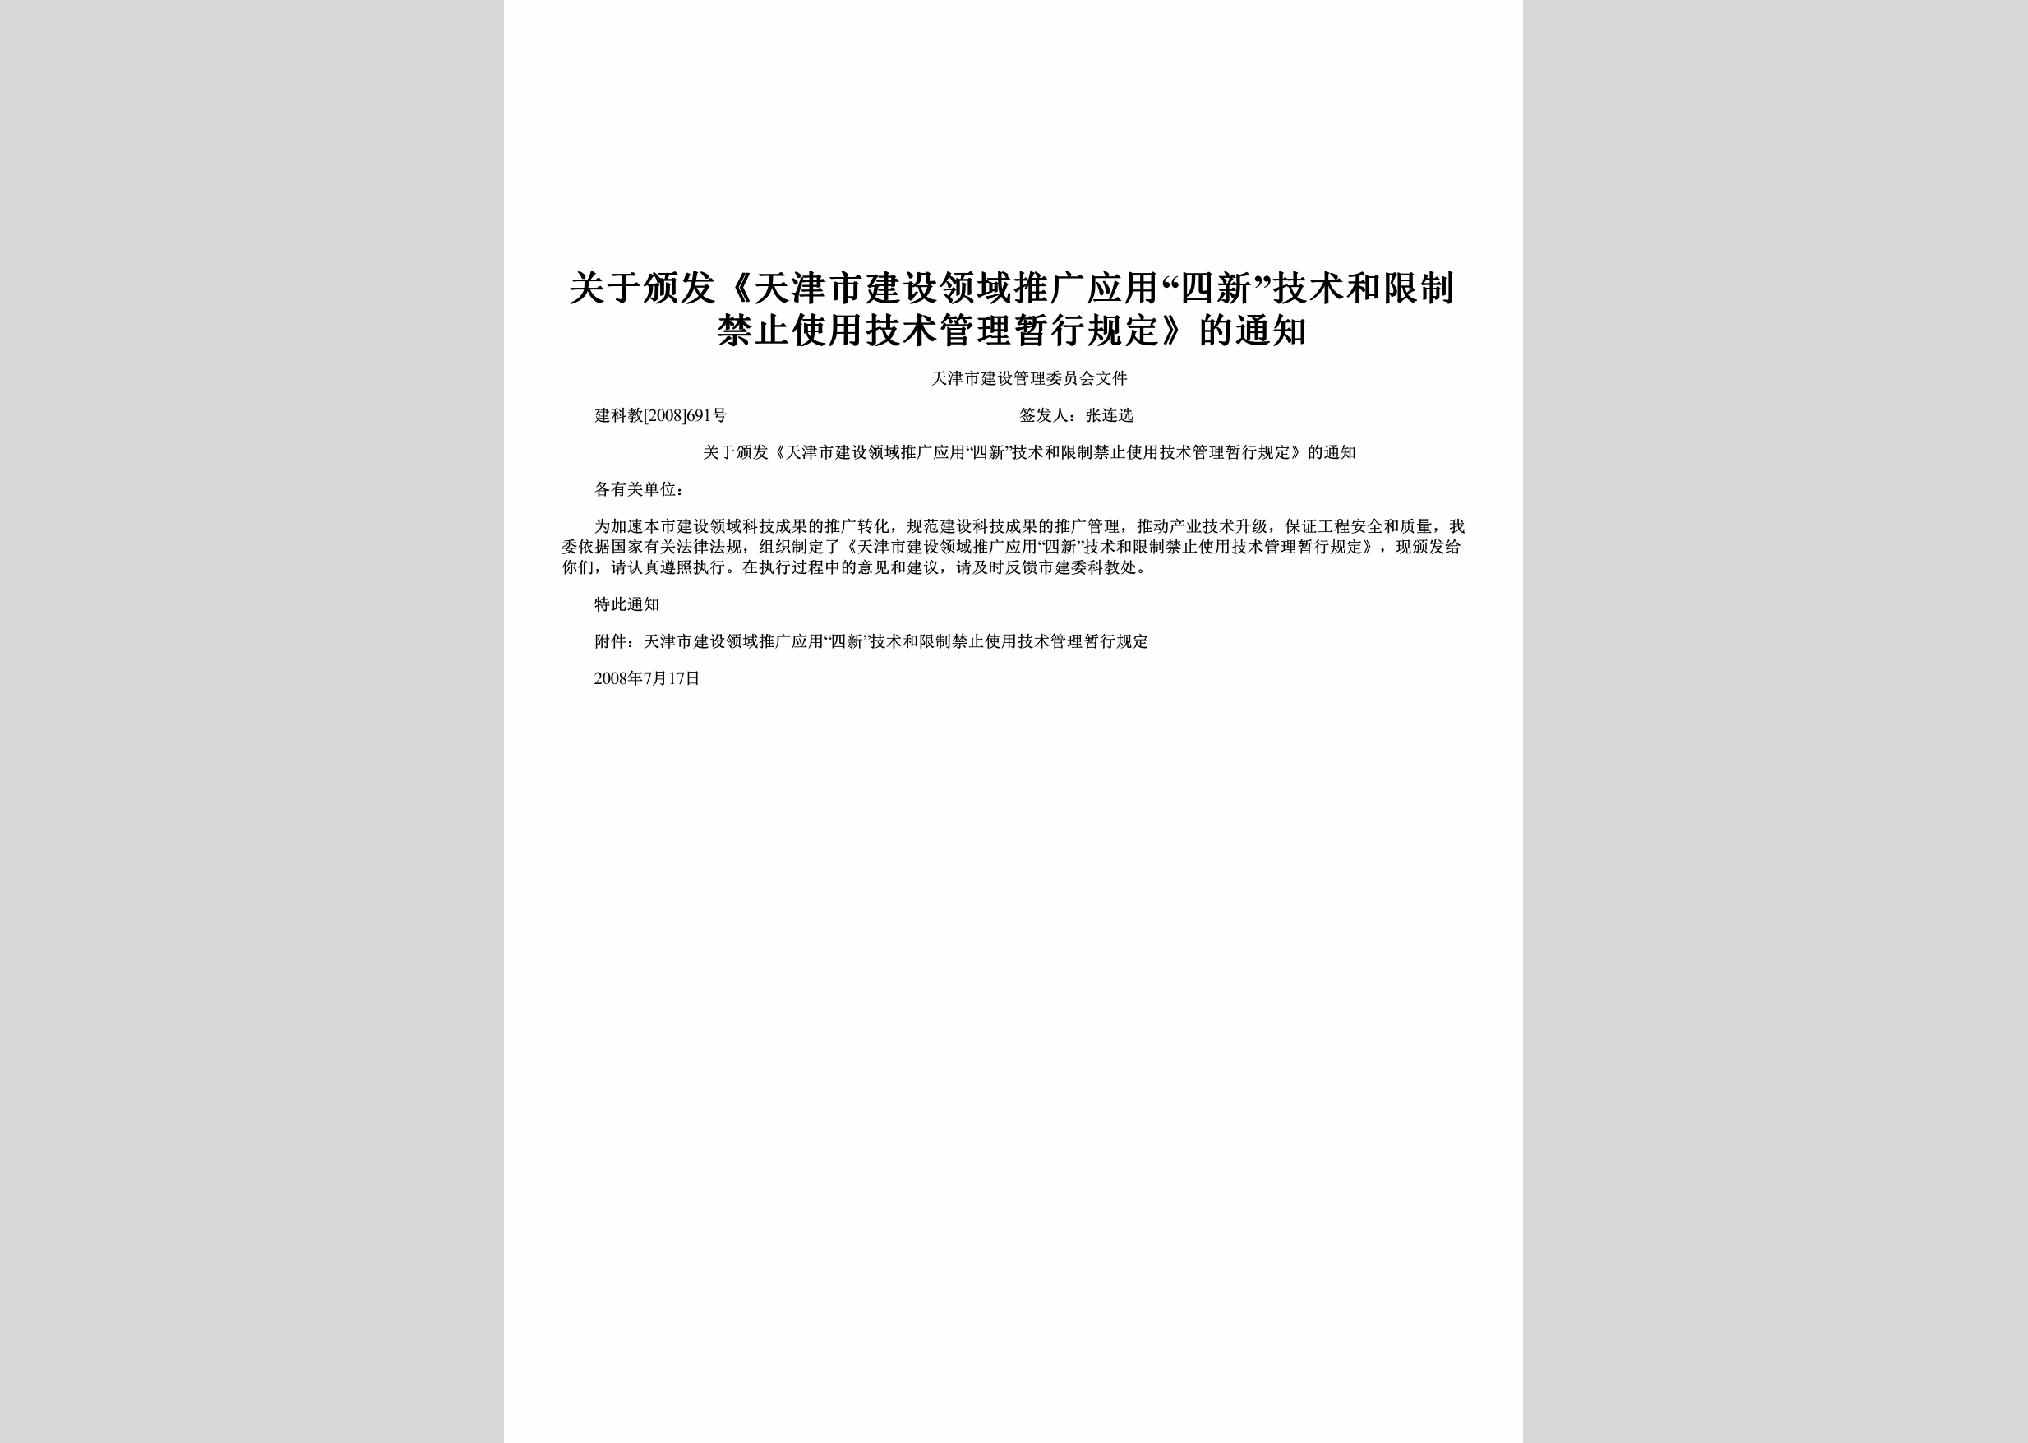 建科教[2008]691号：关于颁发《天津市建设领域推广应用“四新”技术和限制禁止使用技术管理暂行规定》的通知